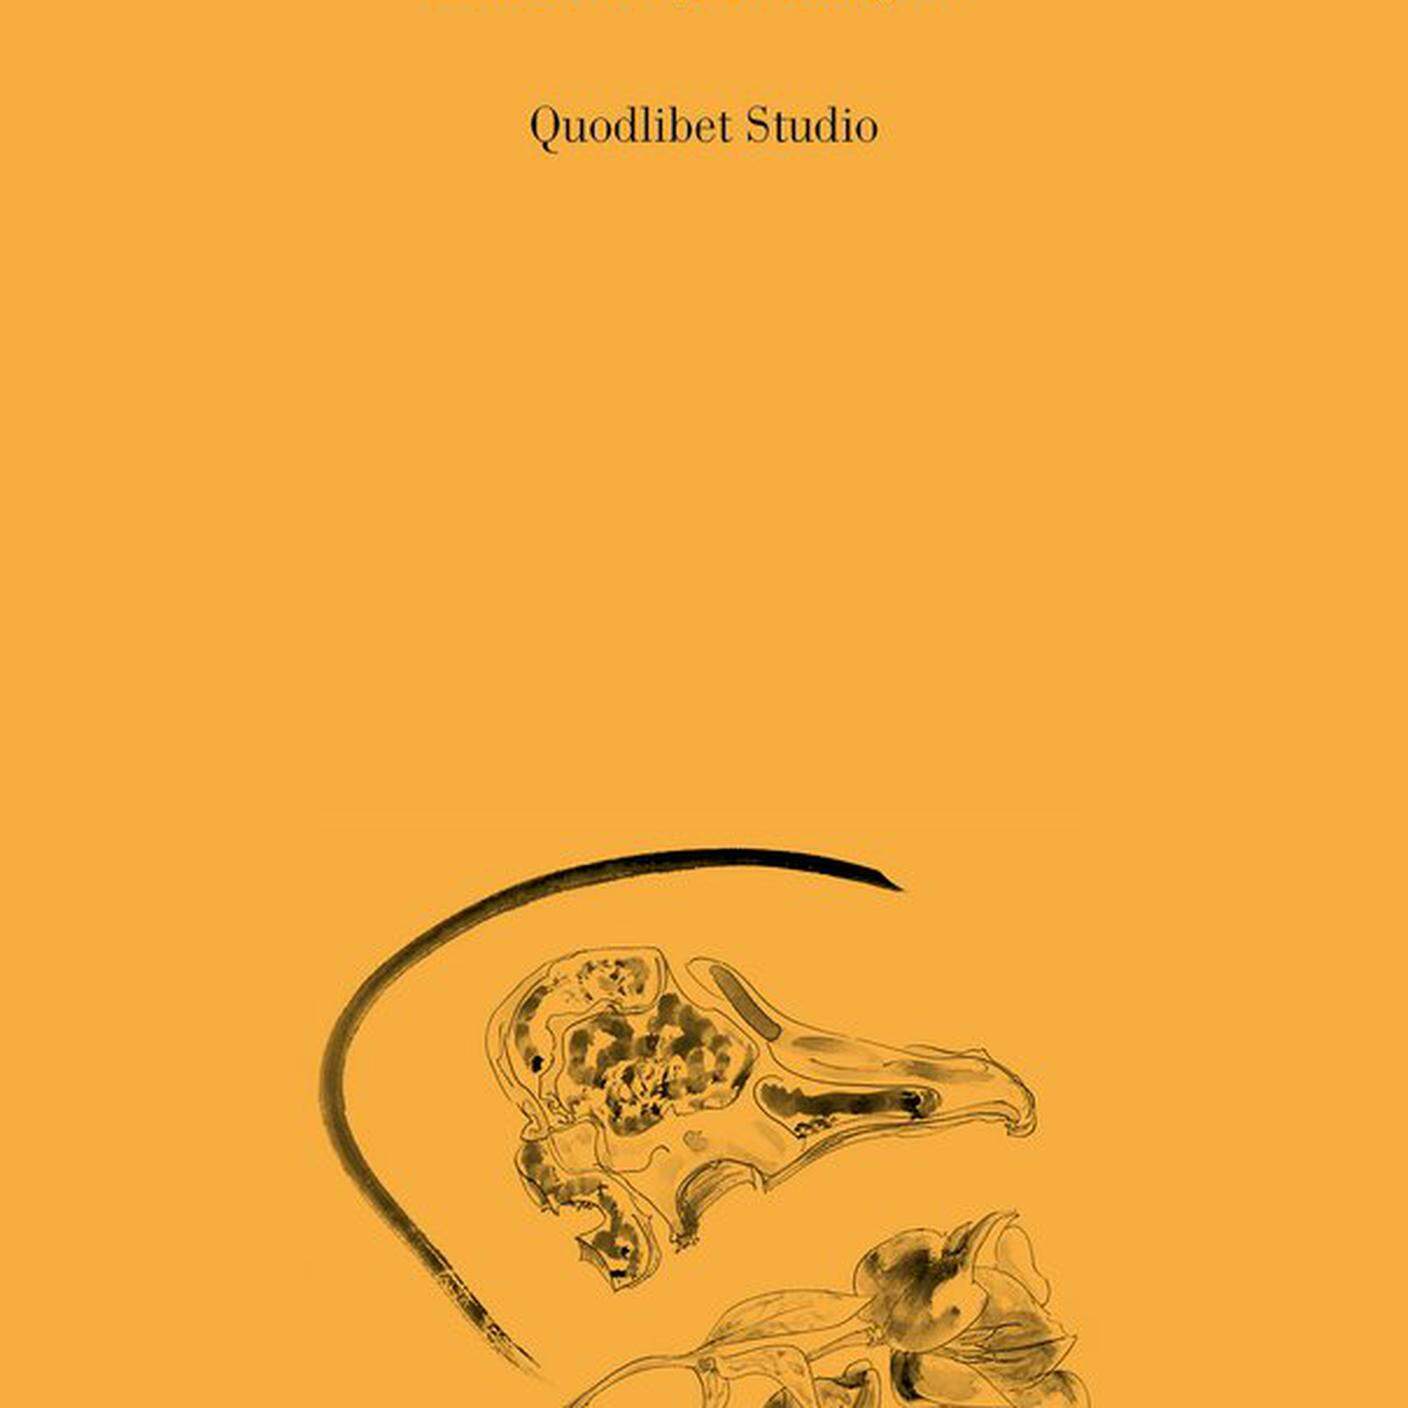 “Otto lezioni per architetti e designer. Riflessioni epistemologiche” a cura di Riccardo Blumer, Quodlibet Studio (dettaglio di copertina)